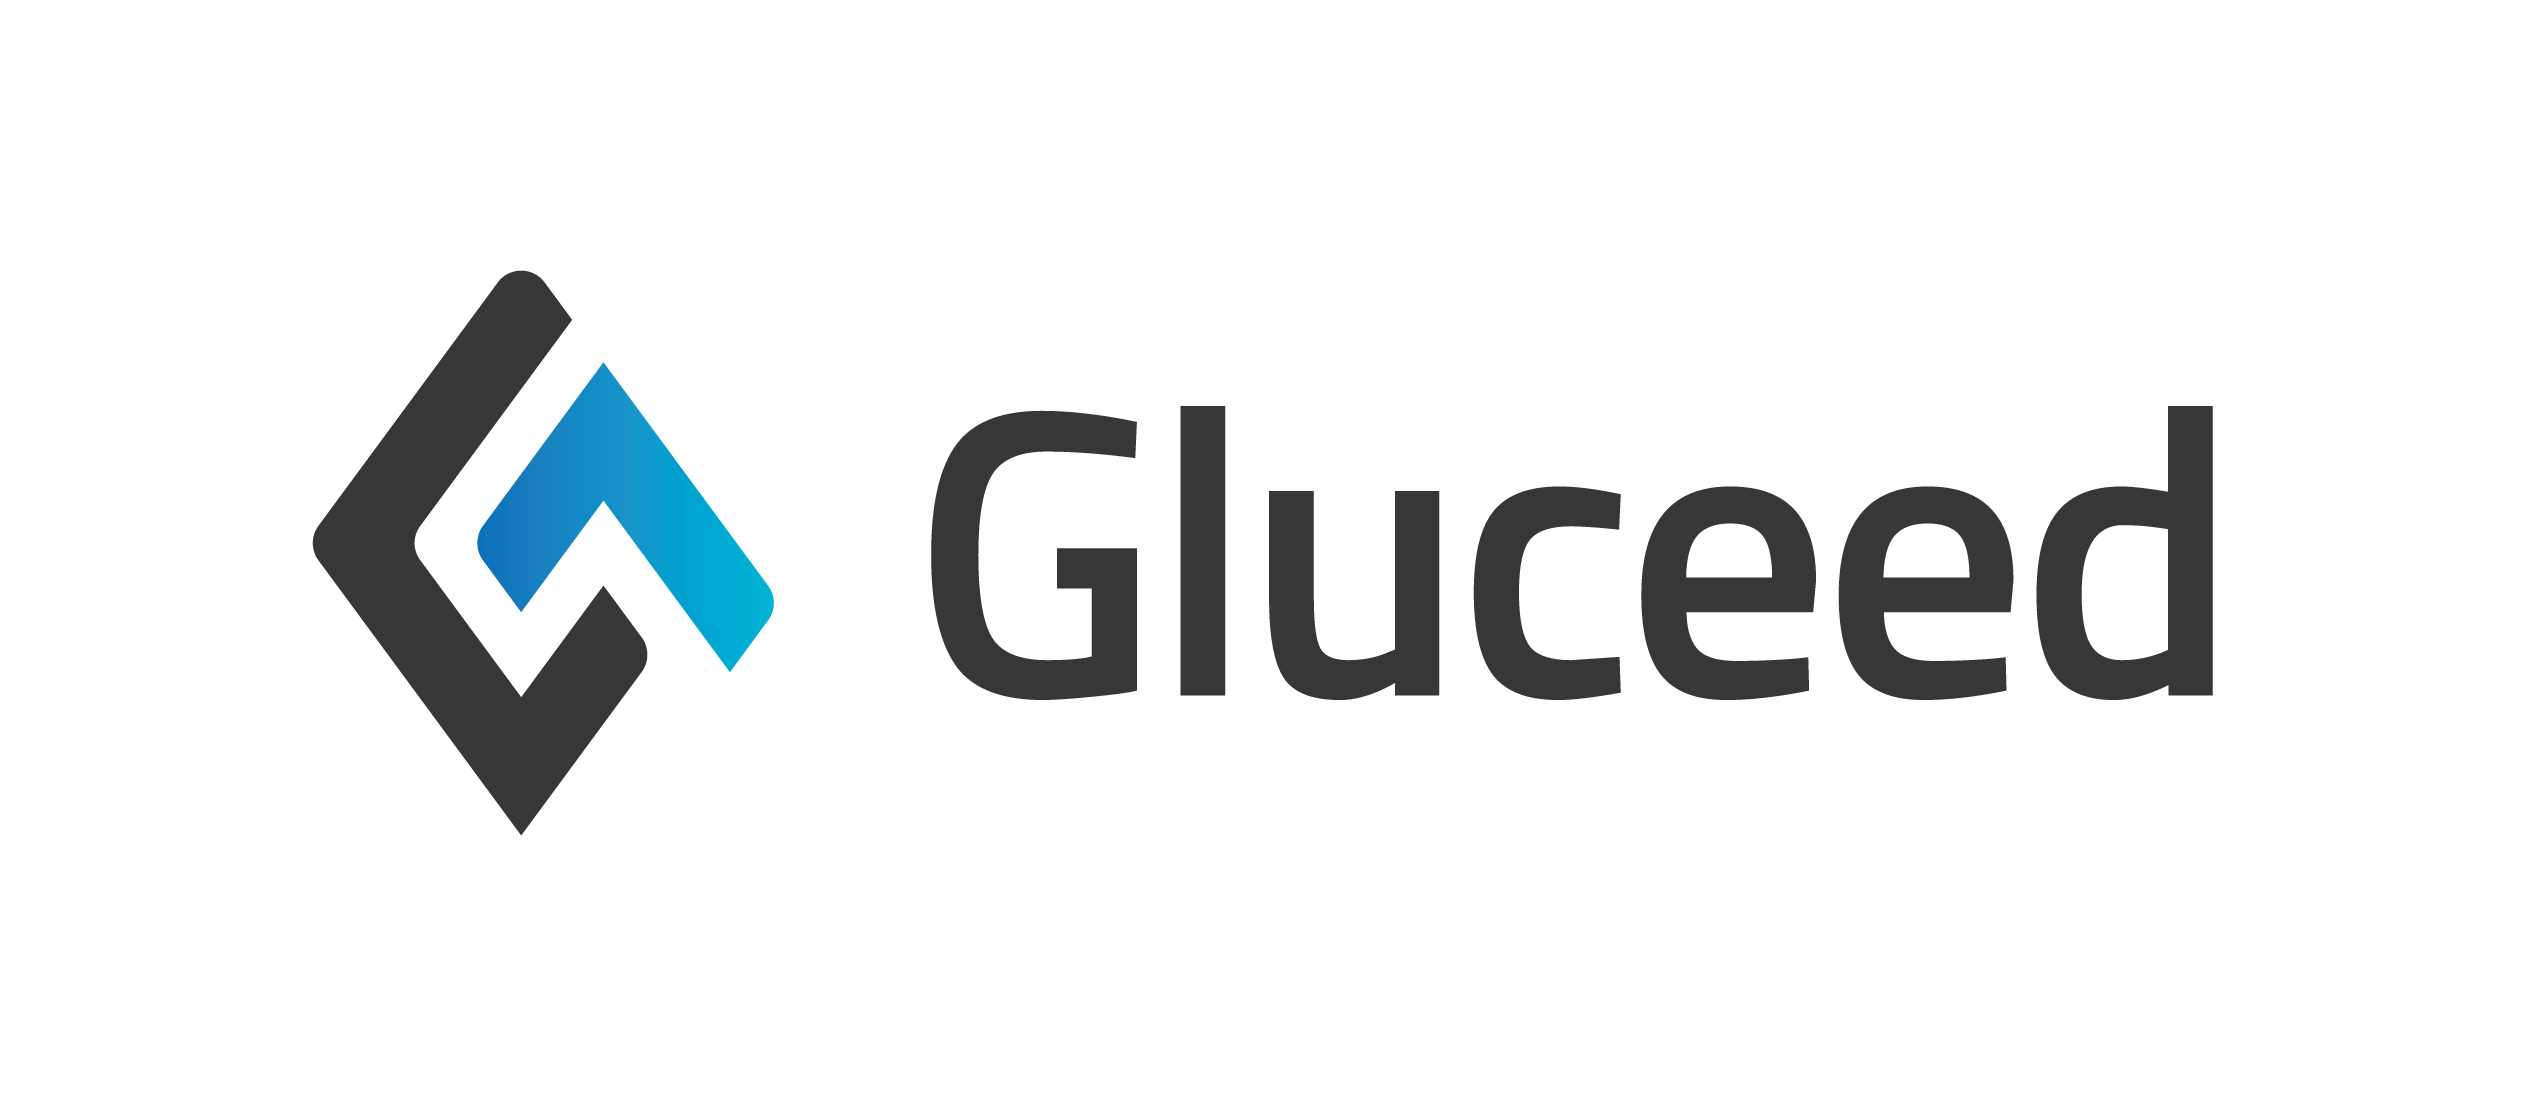 Gluceed